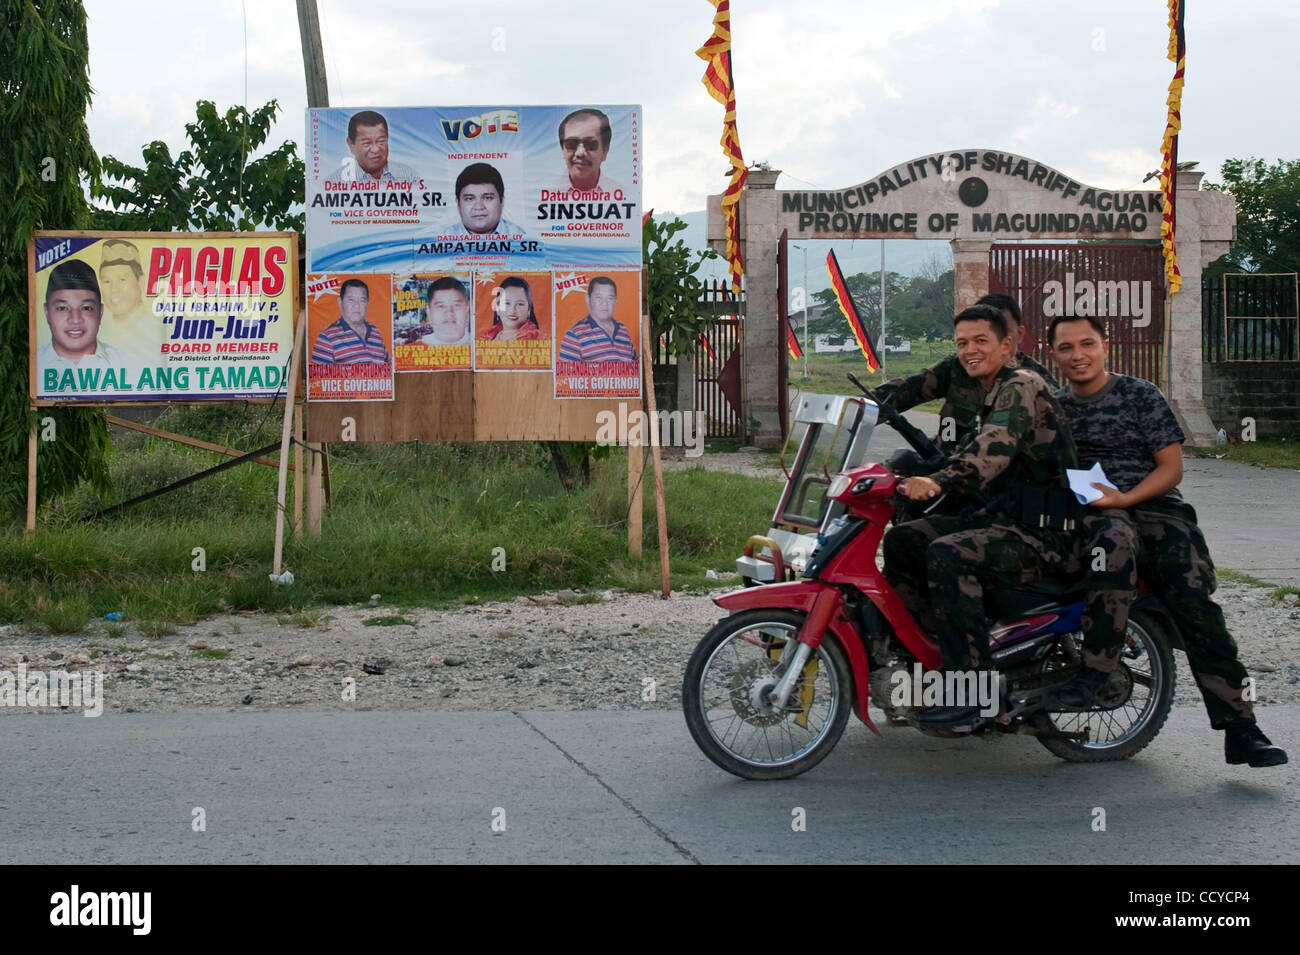 03 mai 2010 - Shariff Aguak, Mindanao, Philippines - Des soldats sur la moto passer par des affiches électorales le 03 mai 2010 à Shariff Aguak, Maguindanao Philippines..les Forces armées des Philippines (AFP) sont en alerte rouge comme les élections aux Philippines sont accompagnés d'une montée de la violence comme politici Banque D'Images